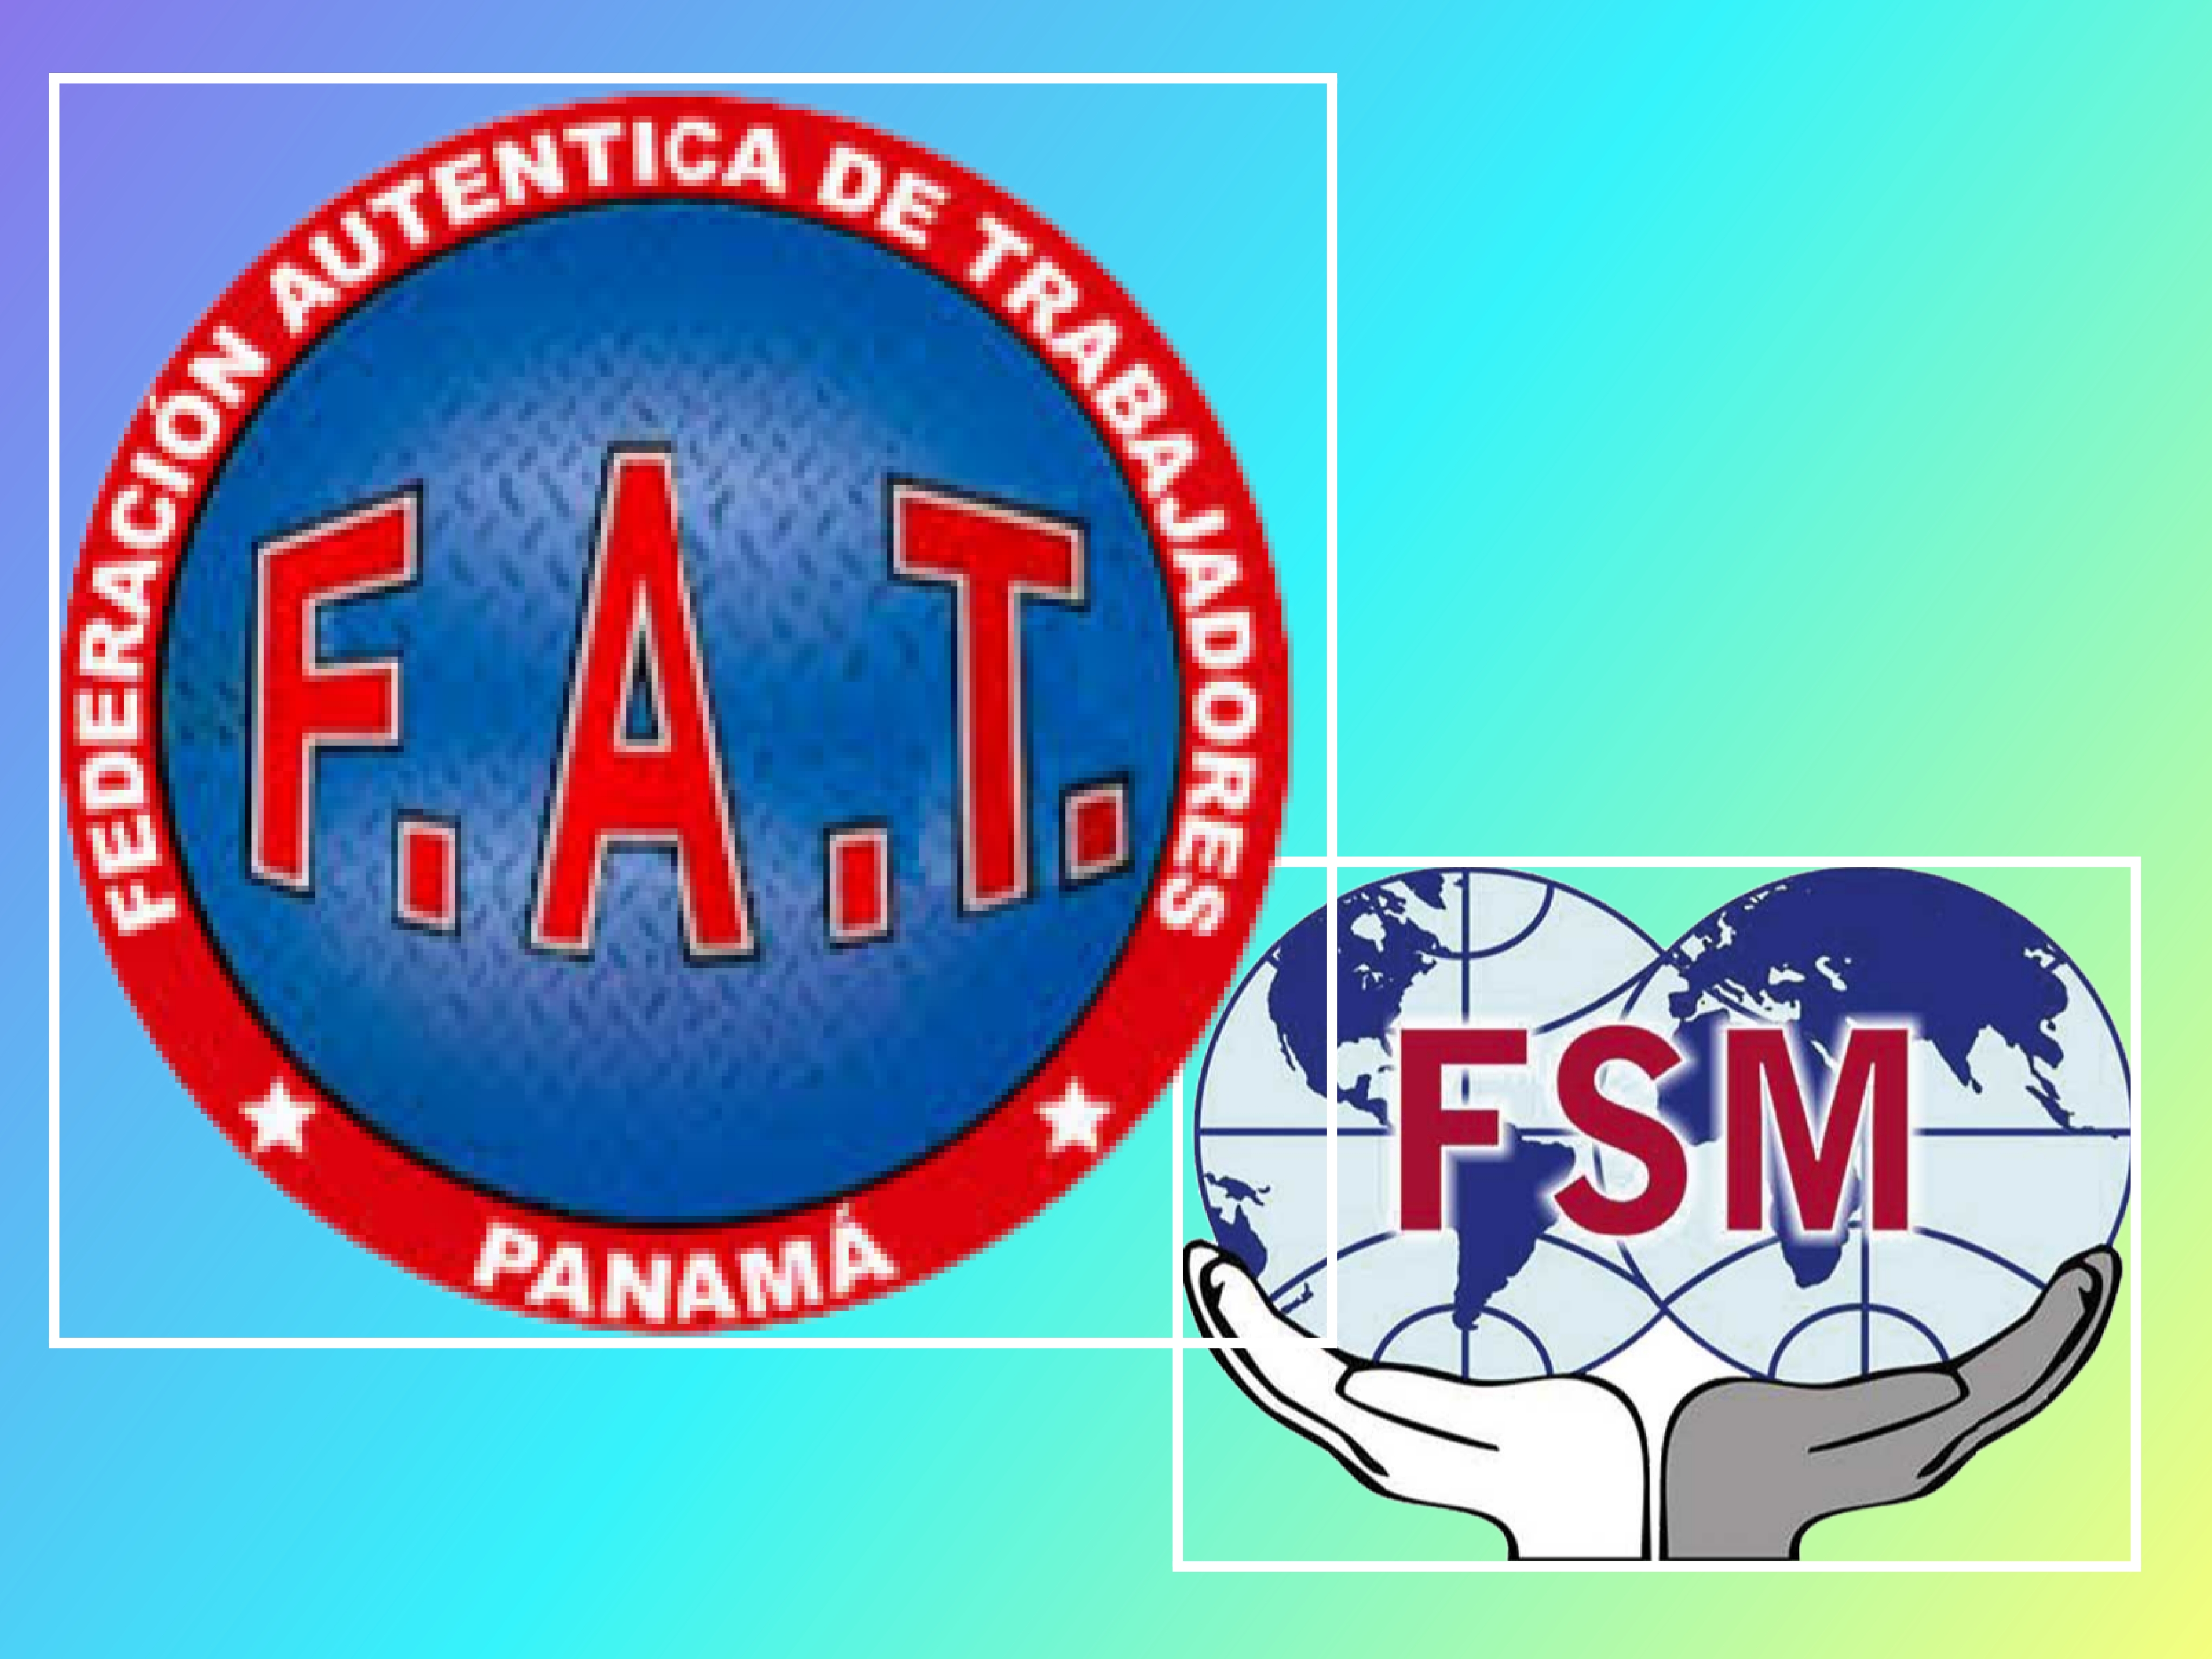 Alberto Reyes, Secretario General de la Federación Auténtica de Trabajadores FAT (Panamá) y miembro del secretariado de la FSM, nos envía una carta de apoyo y solidaridad al STM y la plantilla de Ford